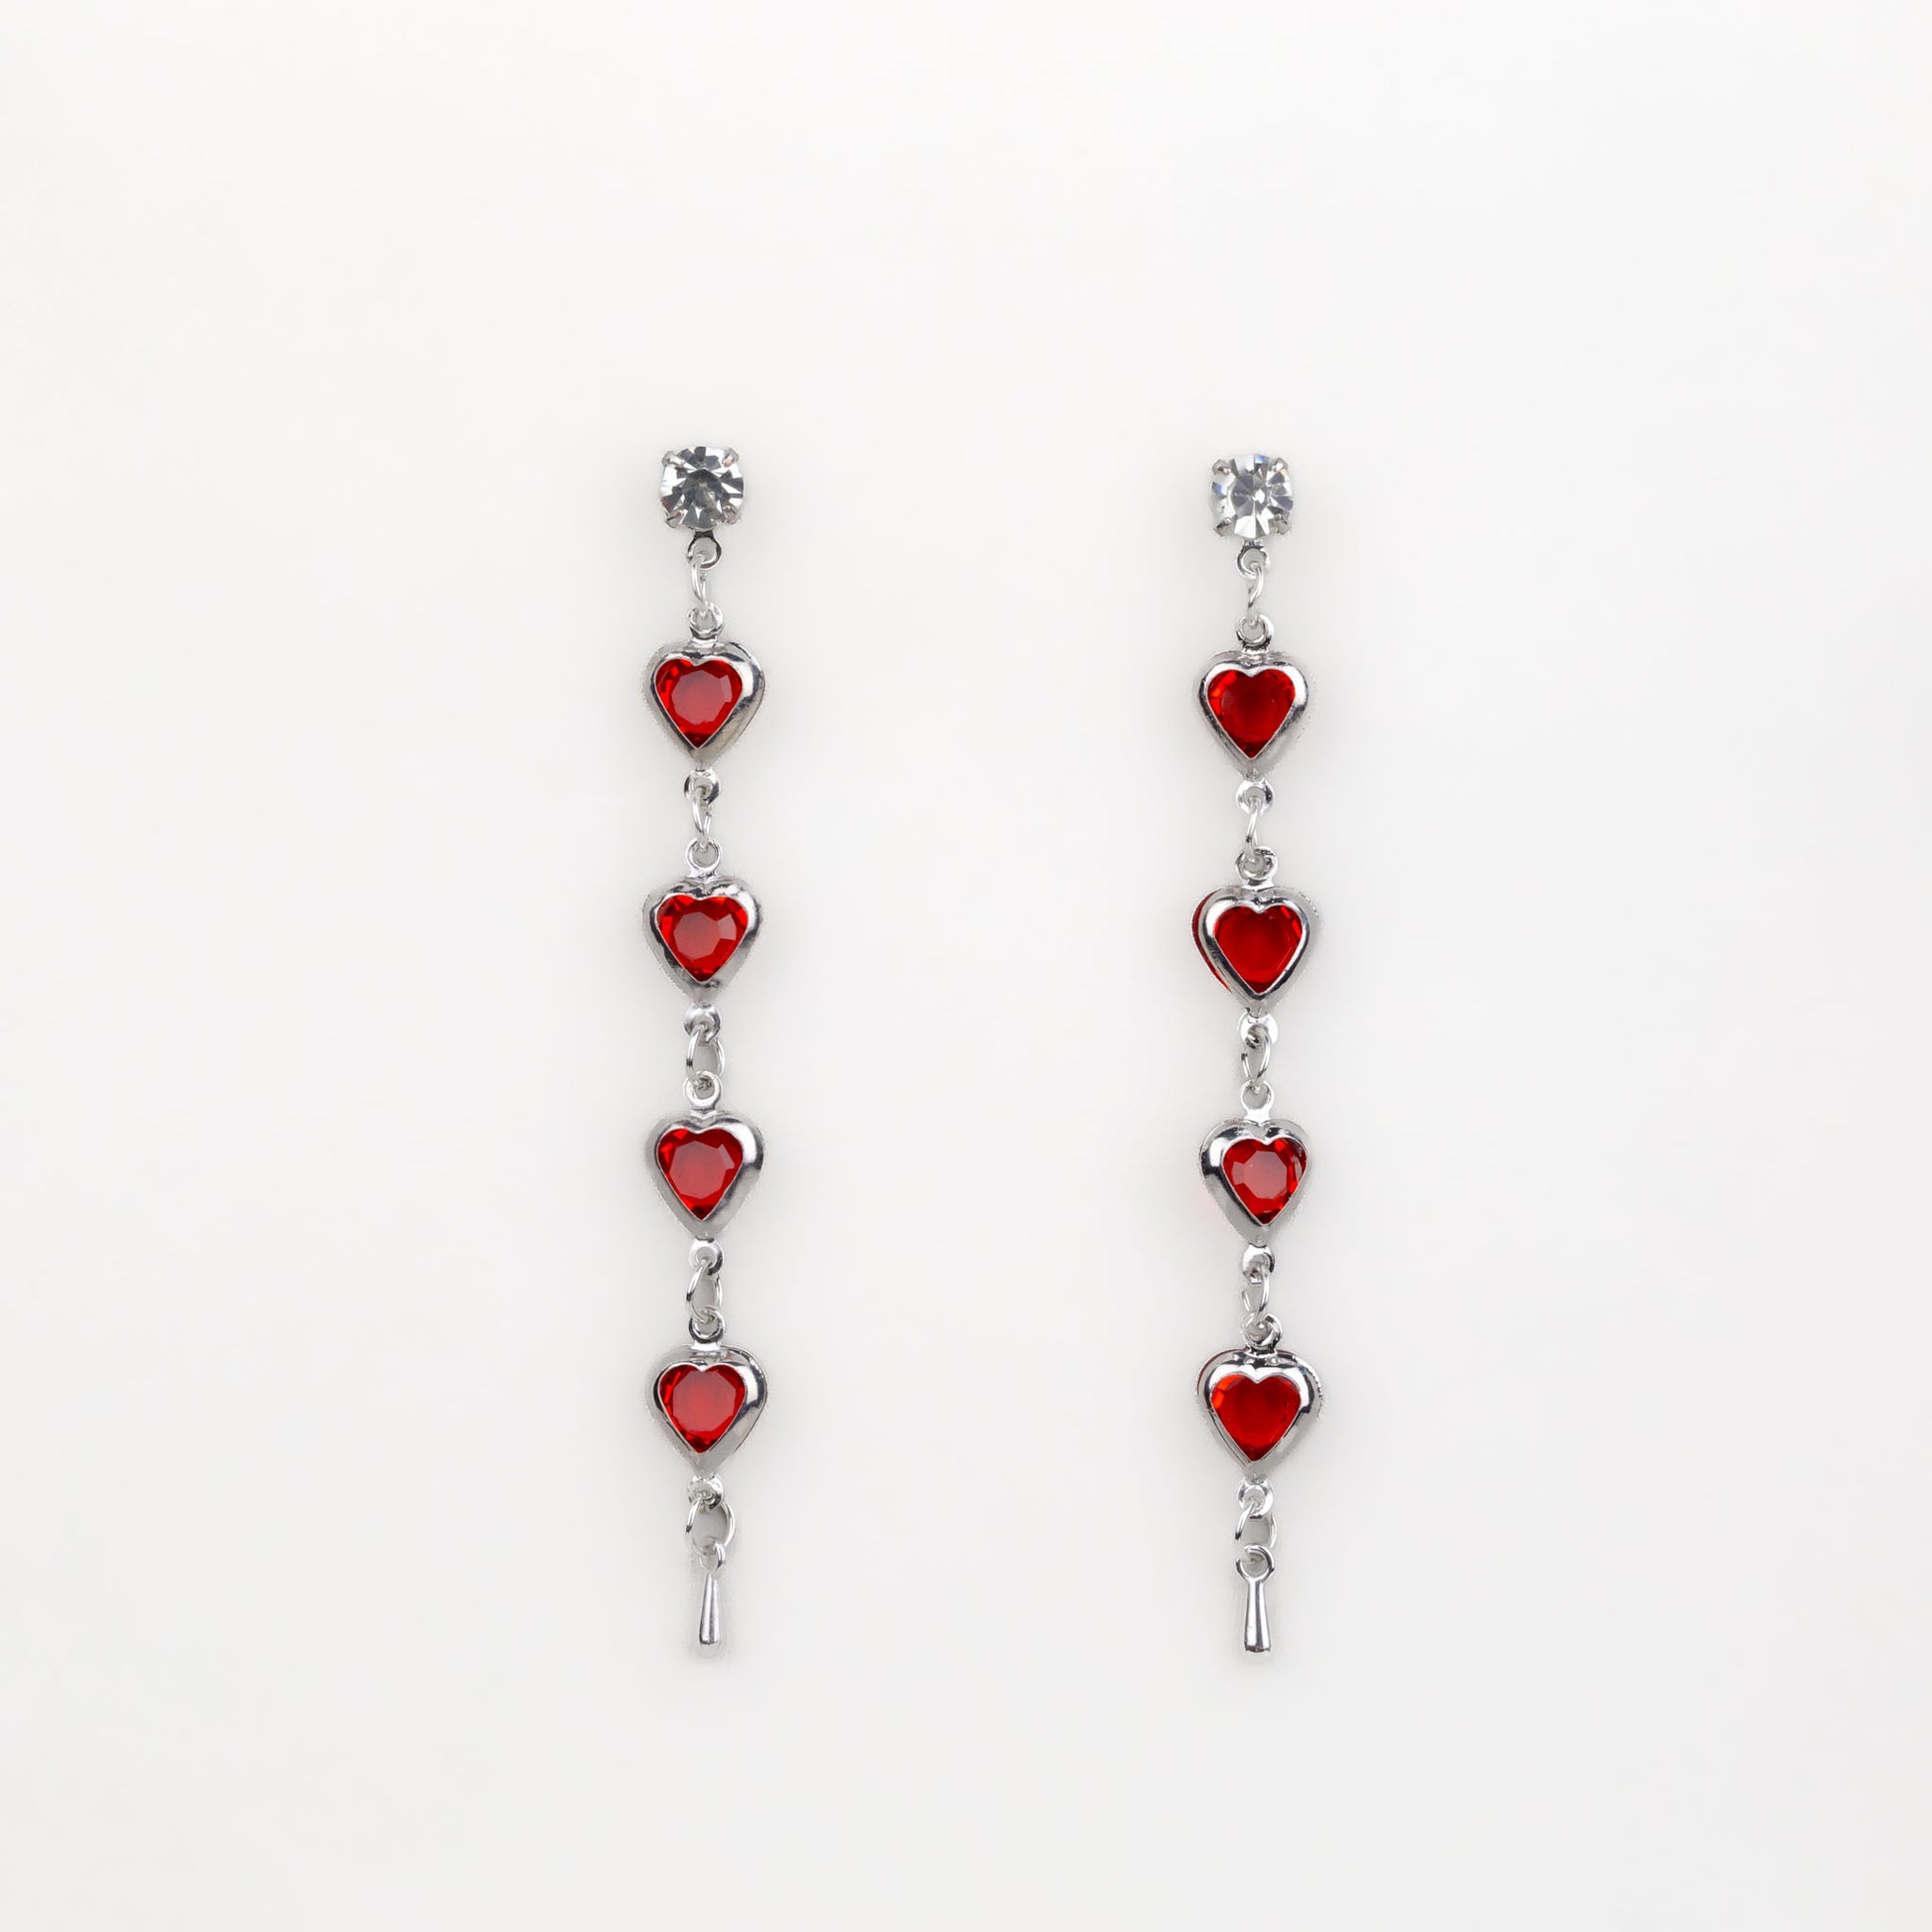 Cercei lungi cu zale în formă de inimă și pietre roșii - Argintiu